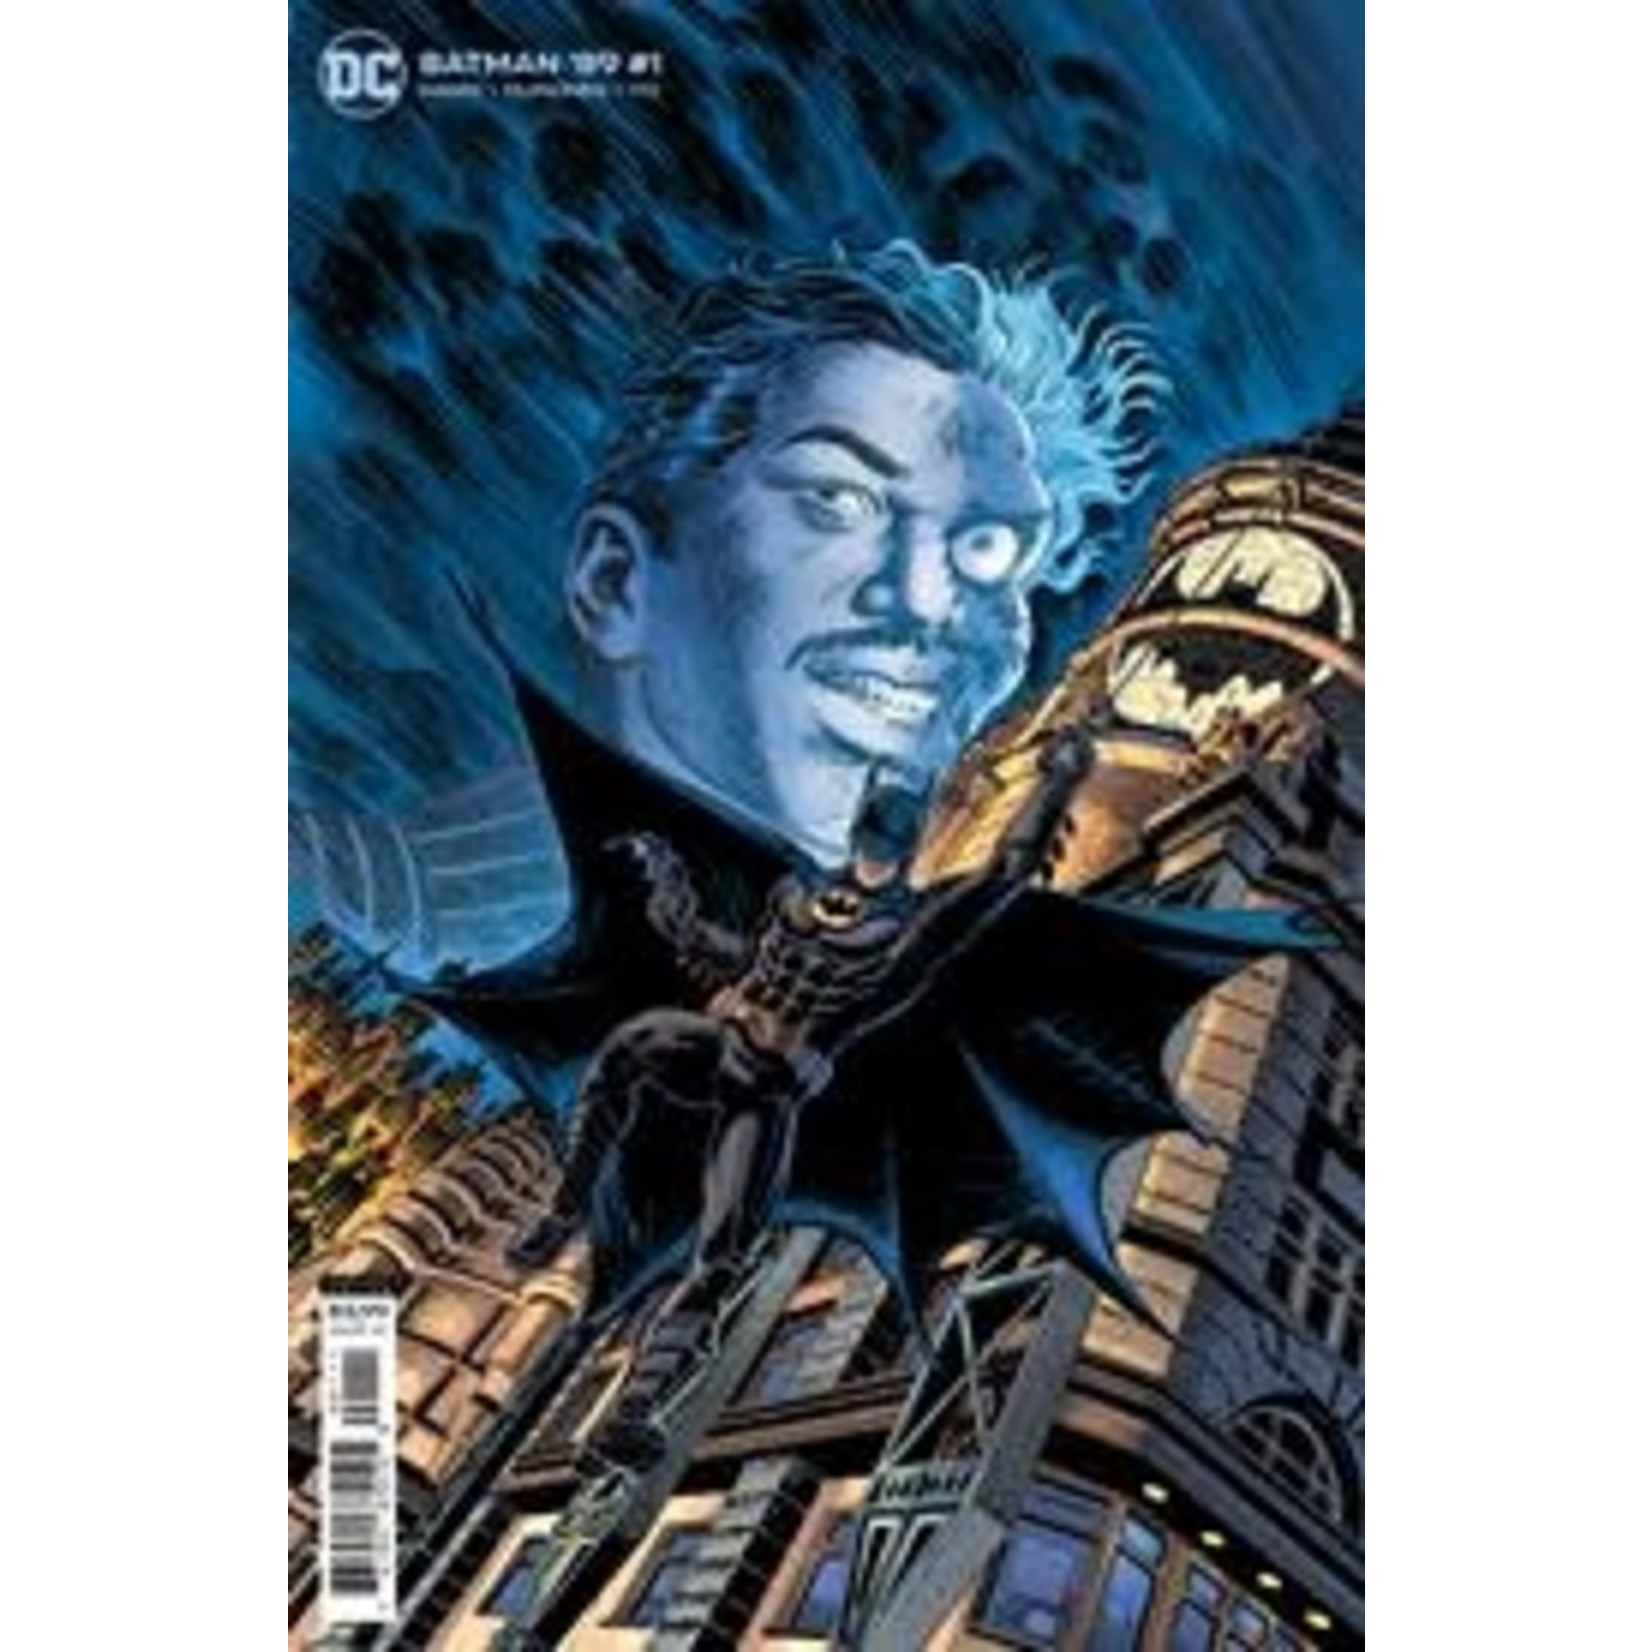 DCU Batman 89 #1 (Of 6) Cvr B Jerry Ordway